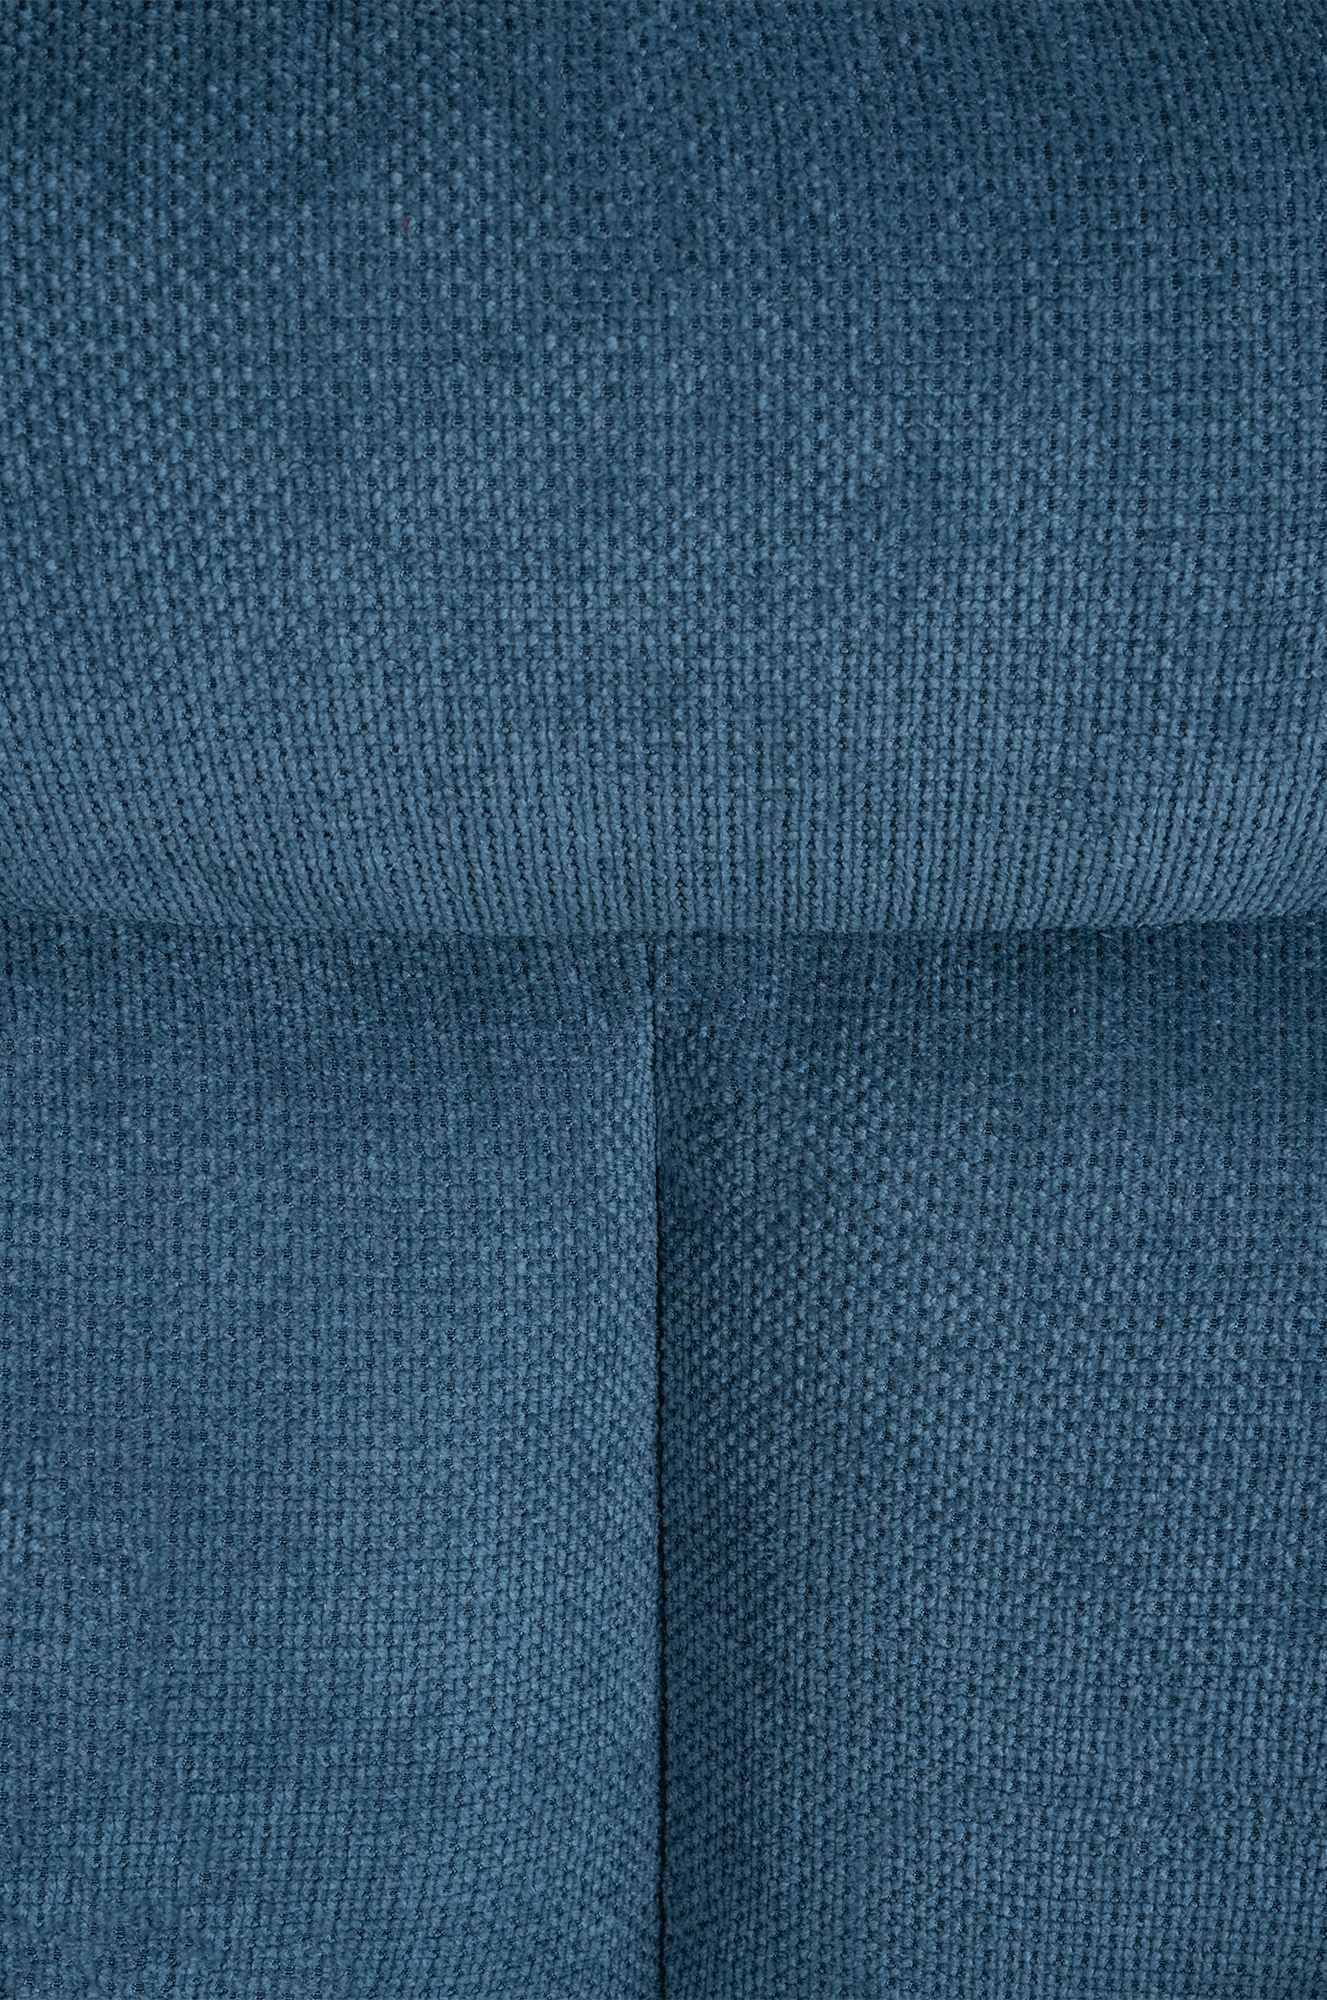 Mit schwenkbarer blau CLP Vilas, Stoff-Bezug Esszimmerstuhl Polster-Stuhl